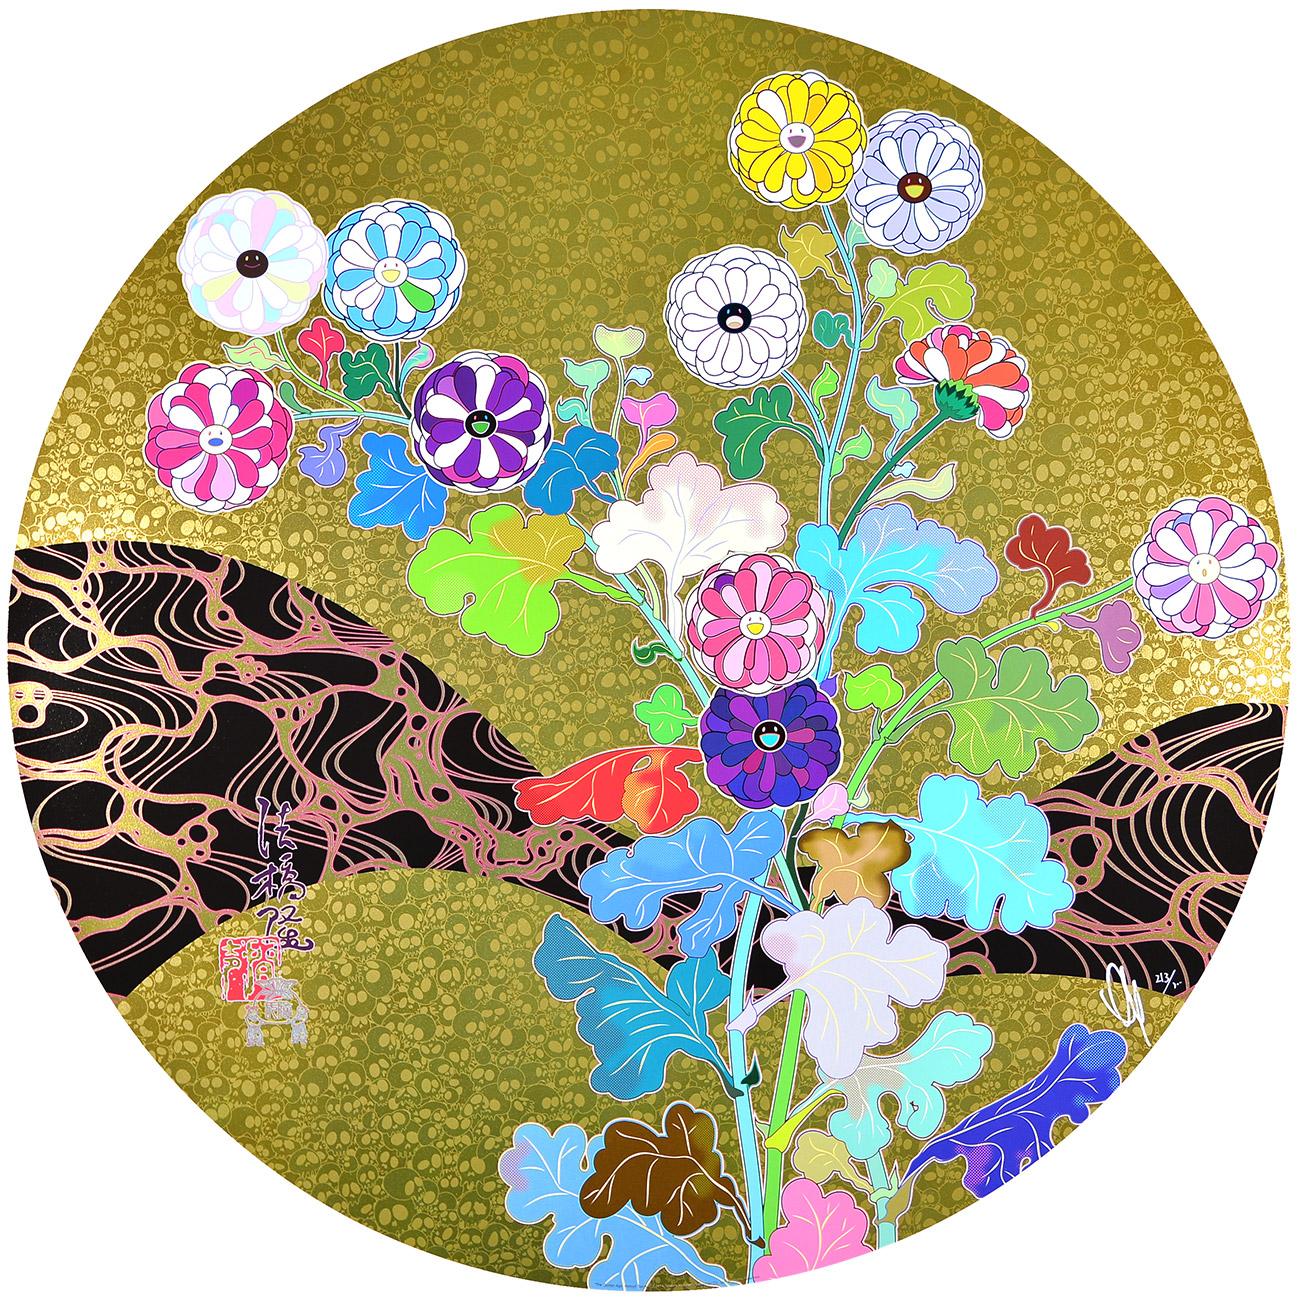 Takashi Murakami - LE NO AGE : HOKKYO TAKASHI
Date de création : 2016
Support : Lithographie offset avec timbre à froid et vernis brillant sur papier
Edition : 213/300
Taille : 71 cm Ø
Condit : Neuf, en parfait état et jamais encadré.
Observations :